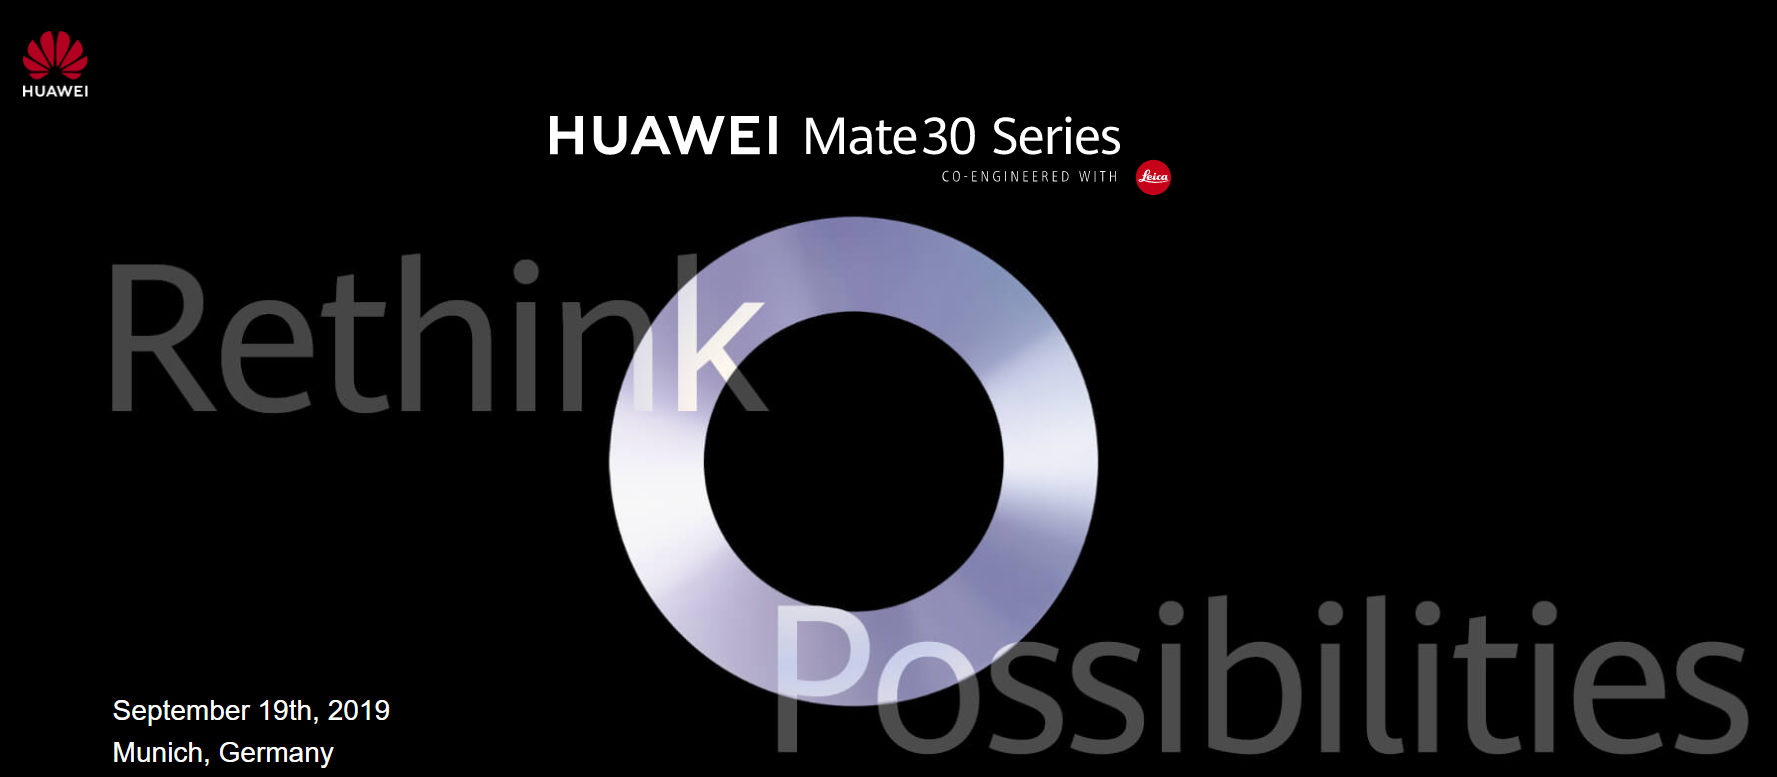 【快訊報報】華為 HUAWEI Mate30 系列新機 將在 9/19 德國慕尼黑發表 - 5g - 科技狗 3C DOG